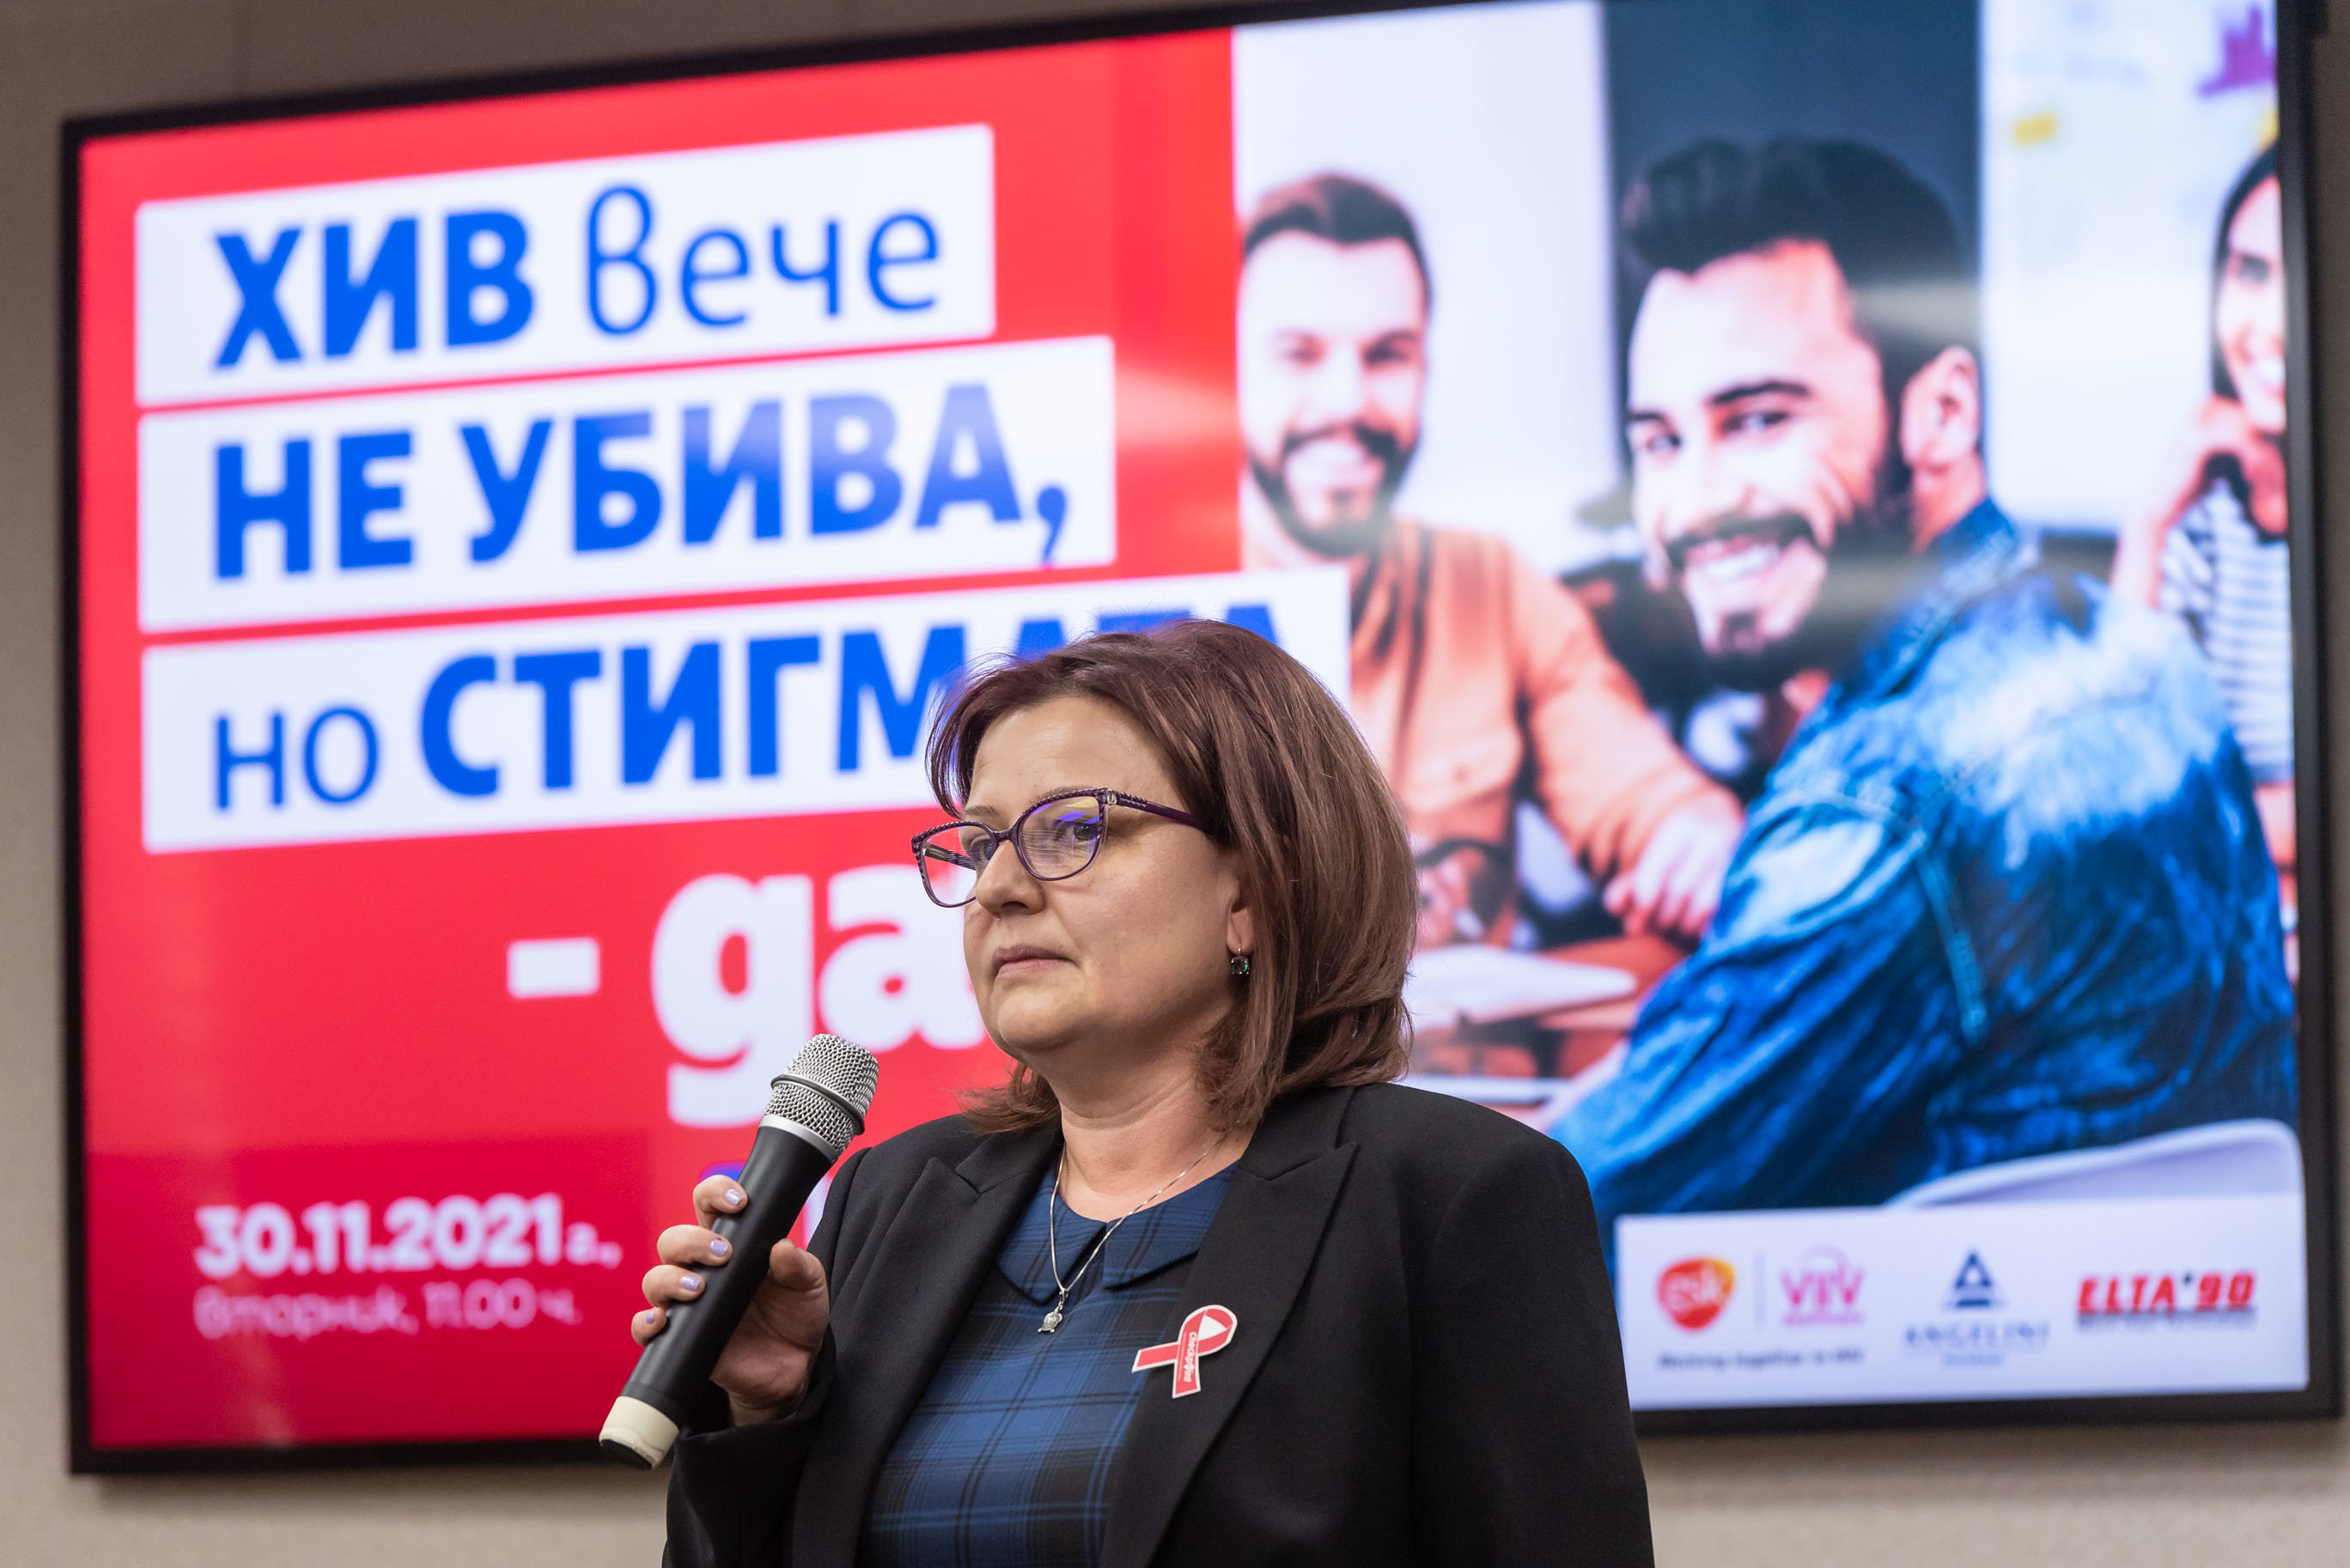 Едва 16 от българите са се изследвали за ХИВ но